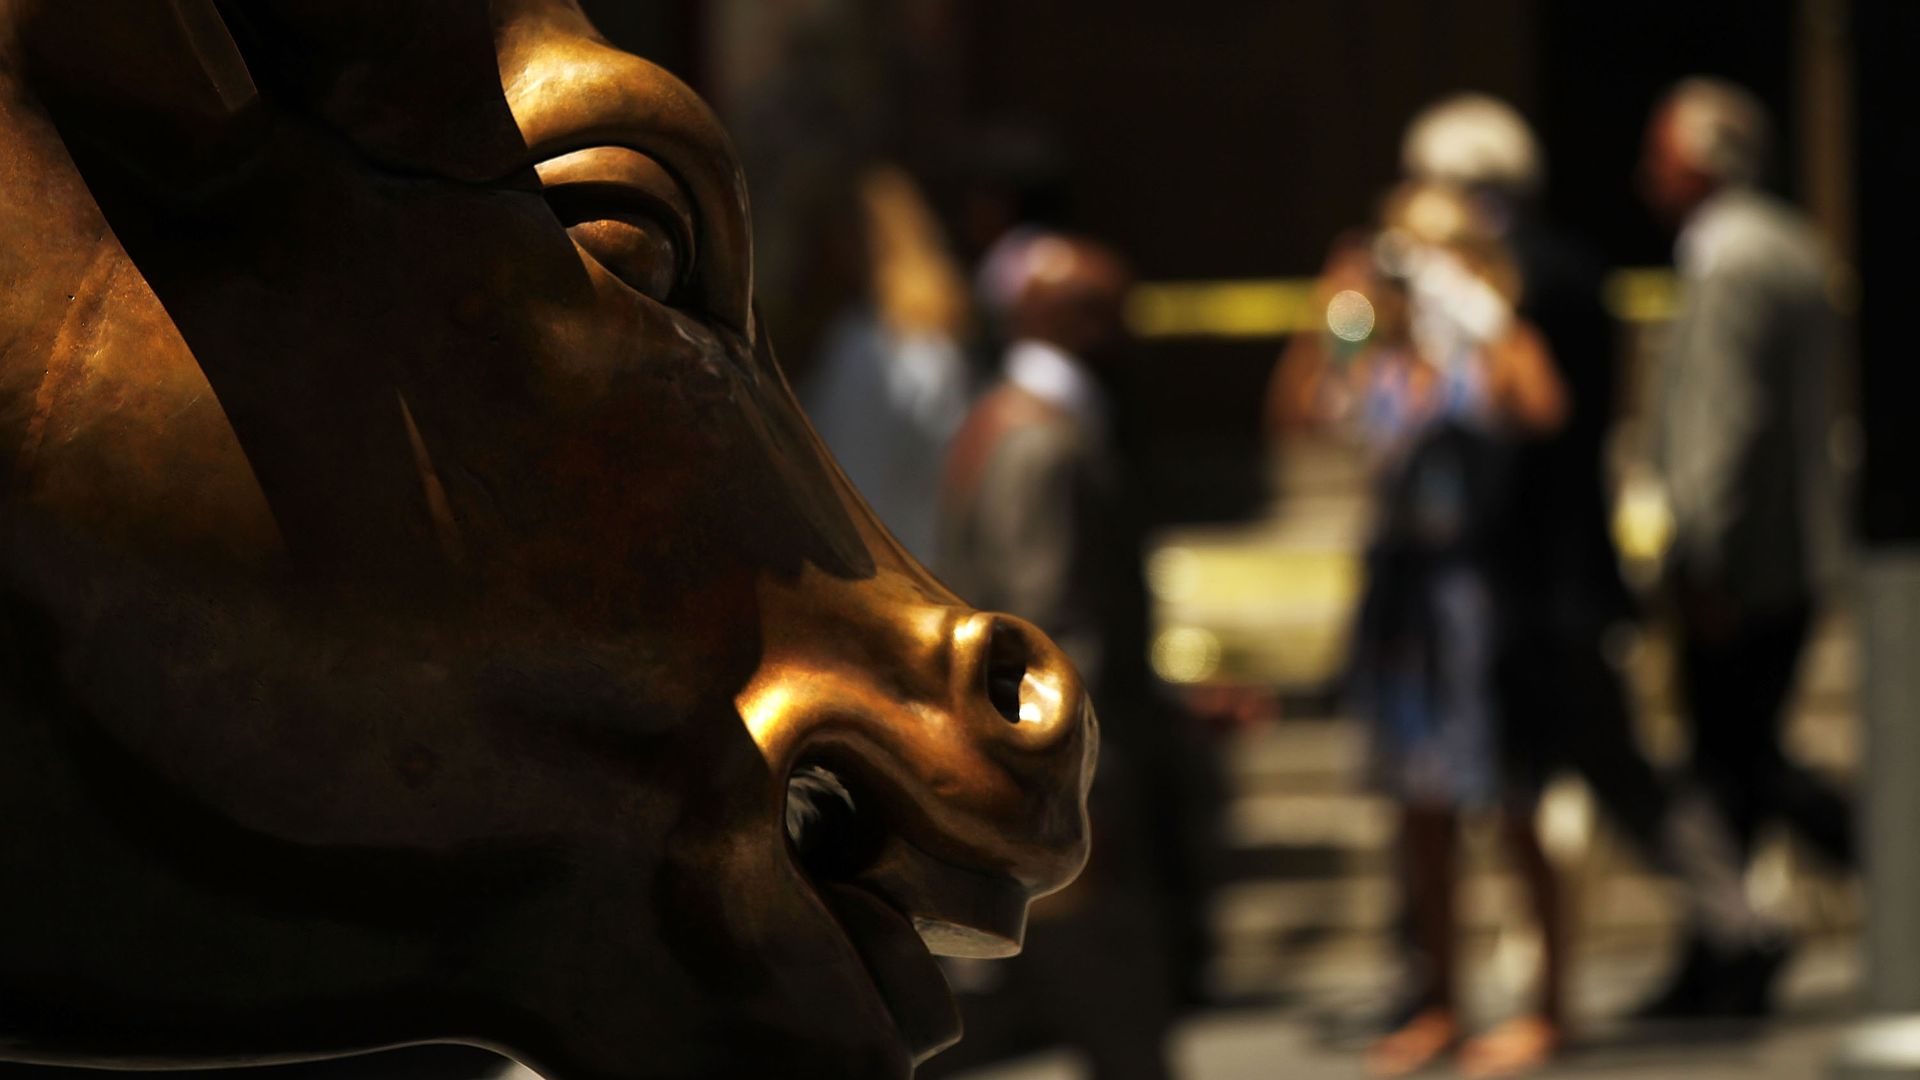 Wall Street bull statue